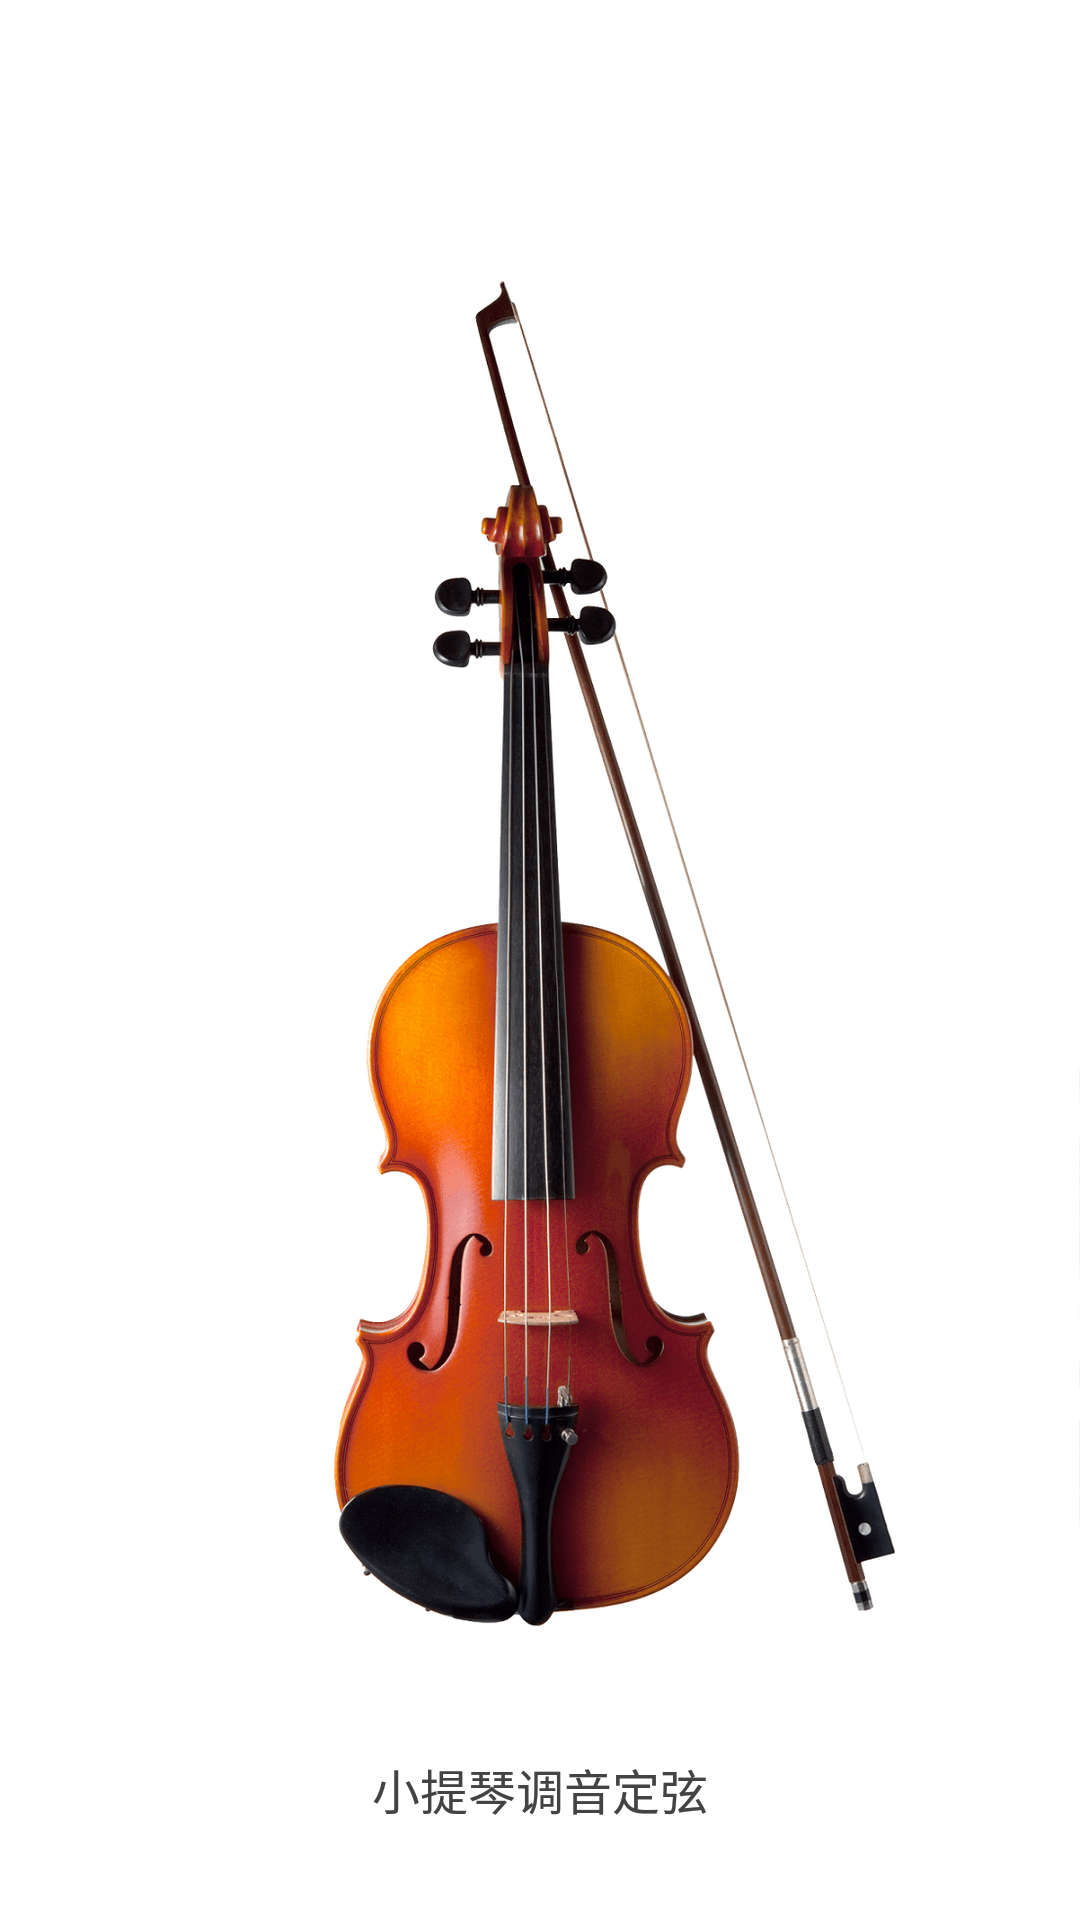 小提琴调音器截图展示1